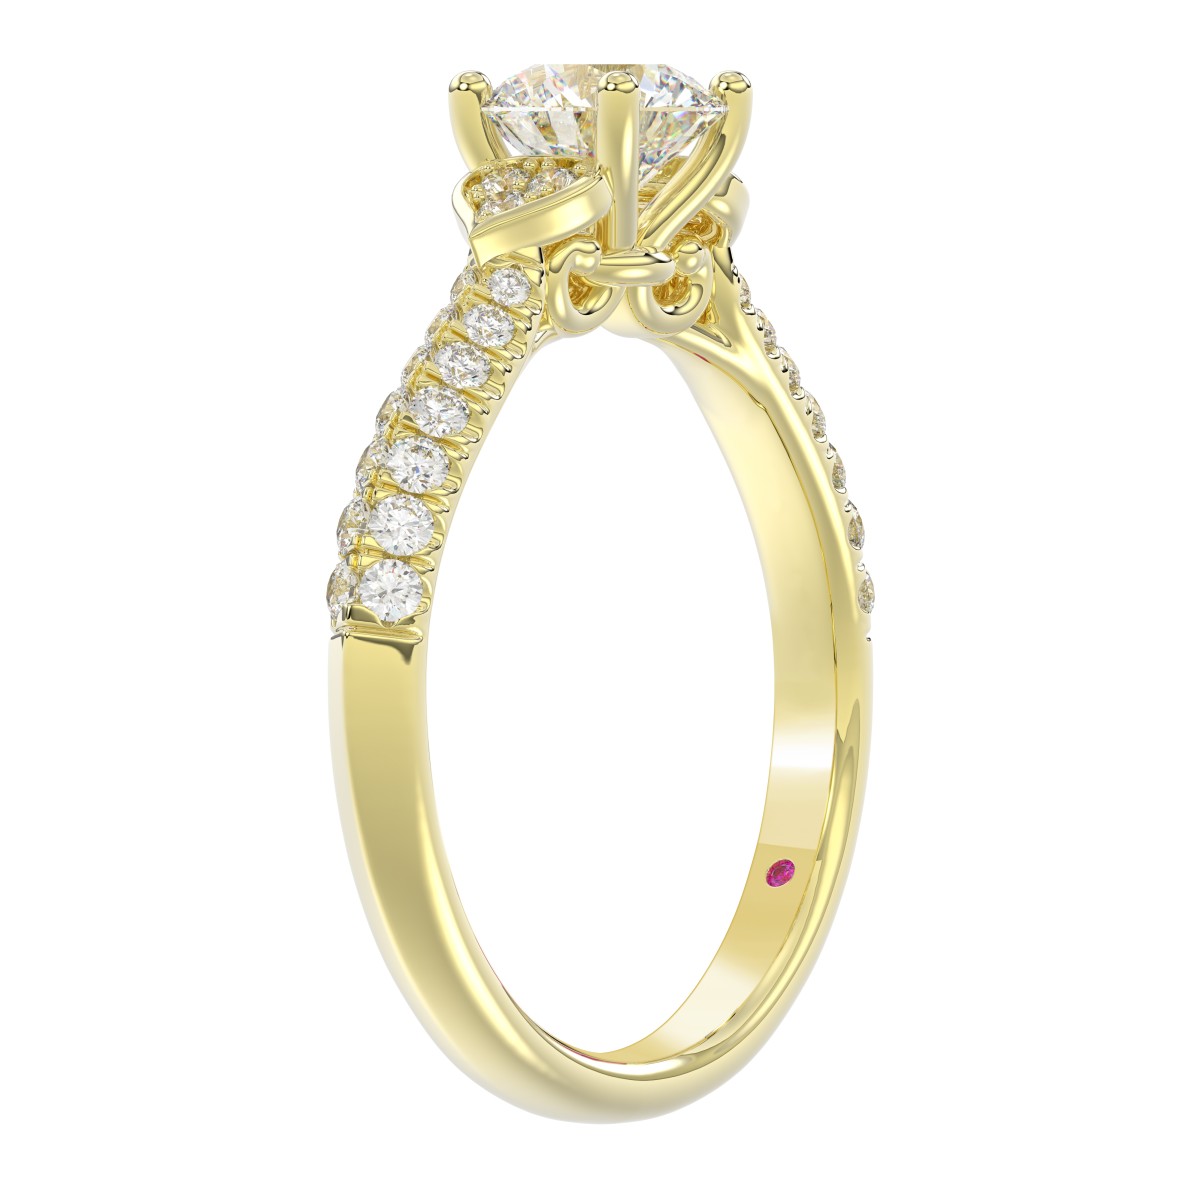 14K YELLOW GOLD 1CT ROUND DIAMOND LADIES RING(CENTER STONE ROUND DIAMOND 3/4CT)